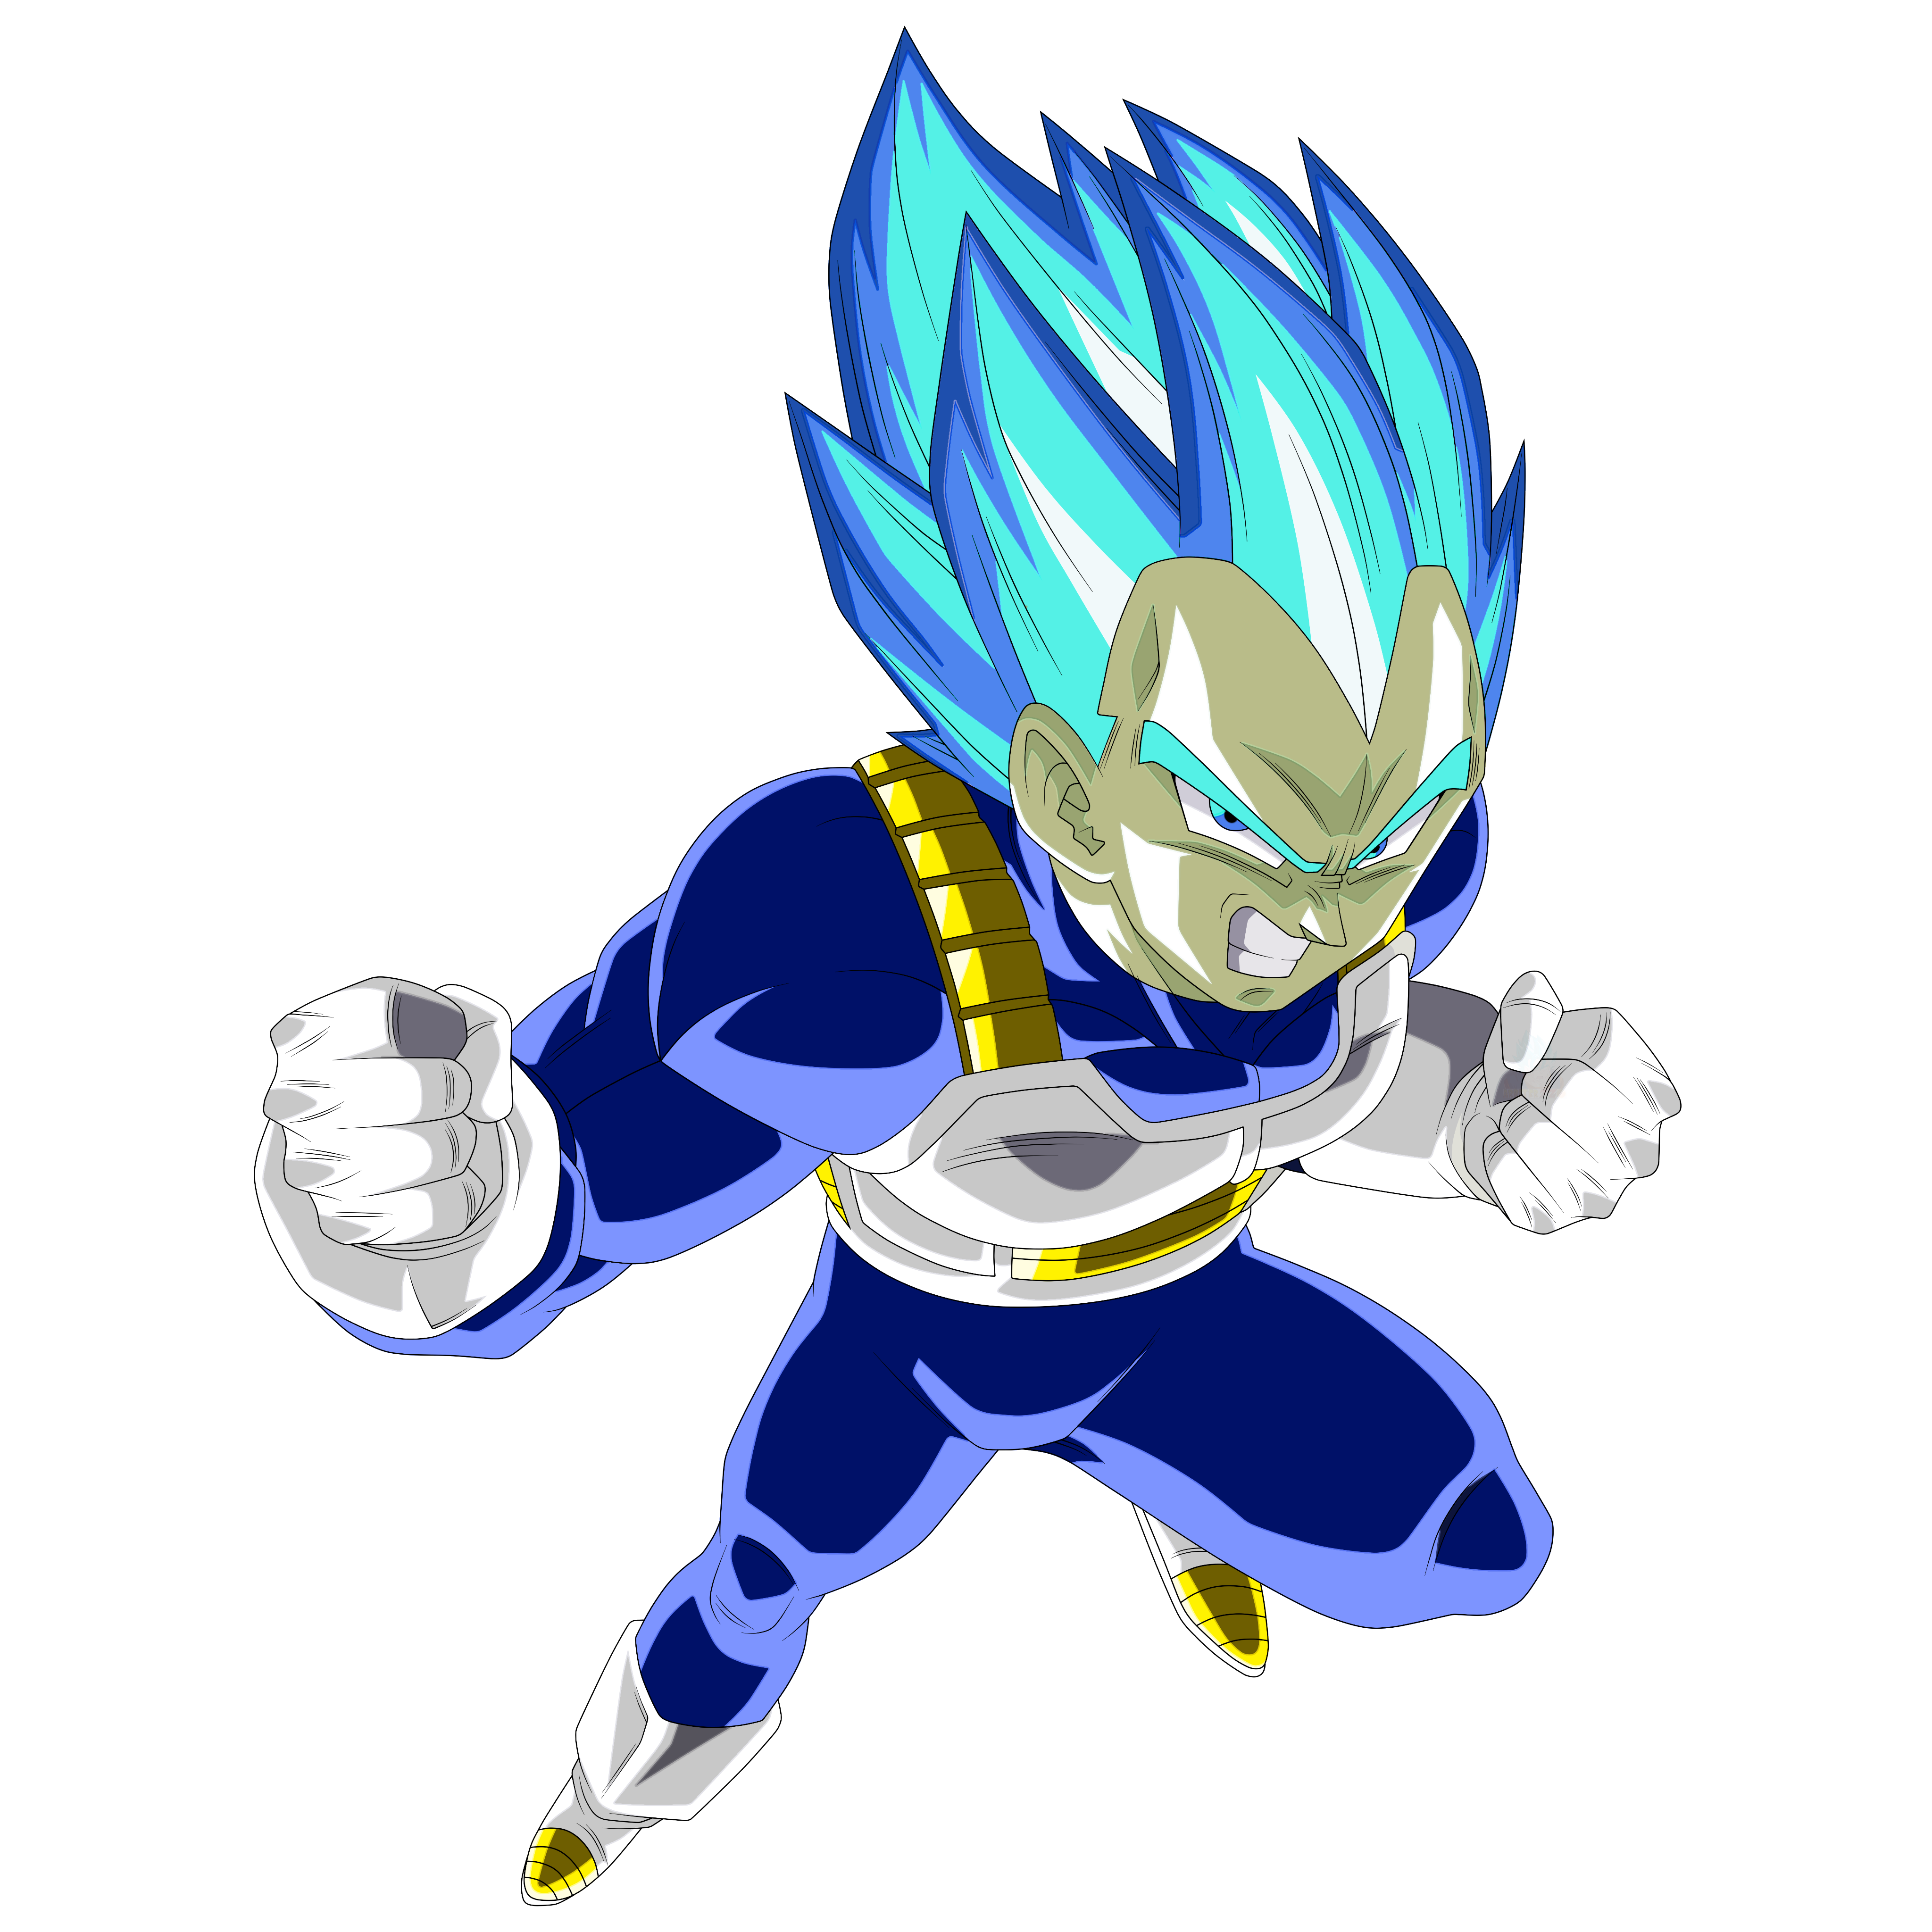 Goku SSJ BLUE 2 render 2 by xchs on DeviantArt